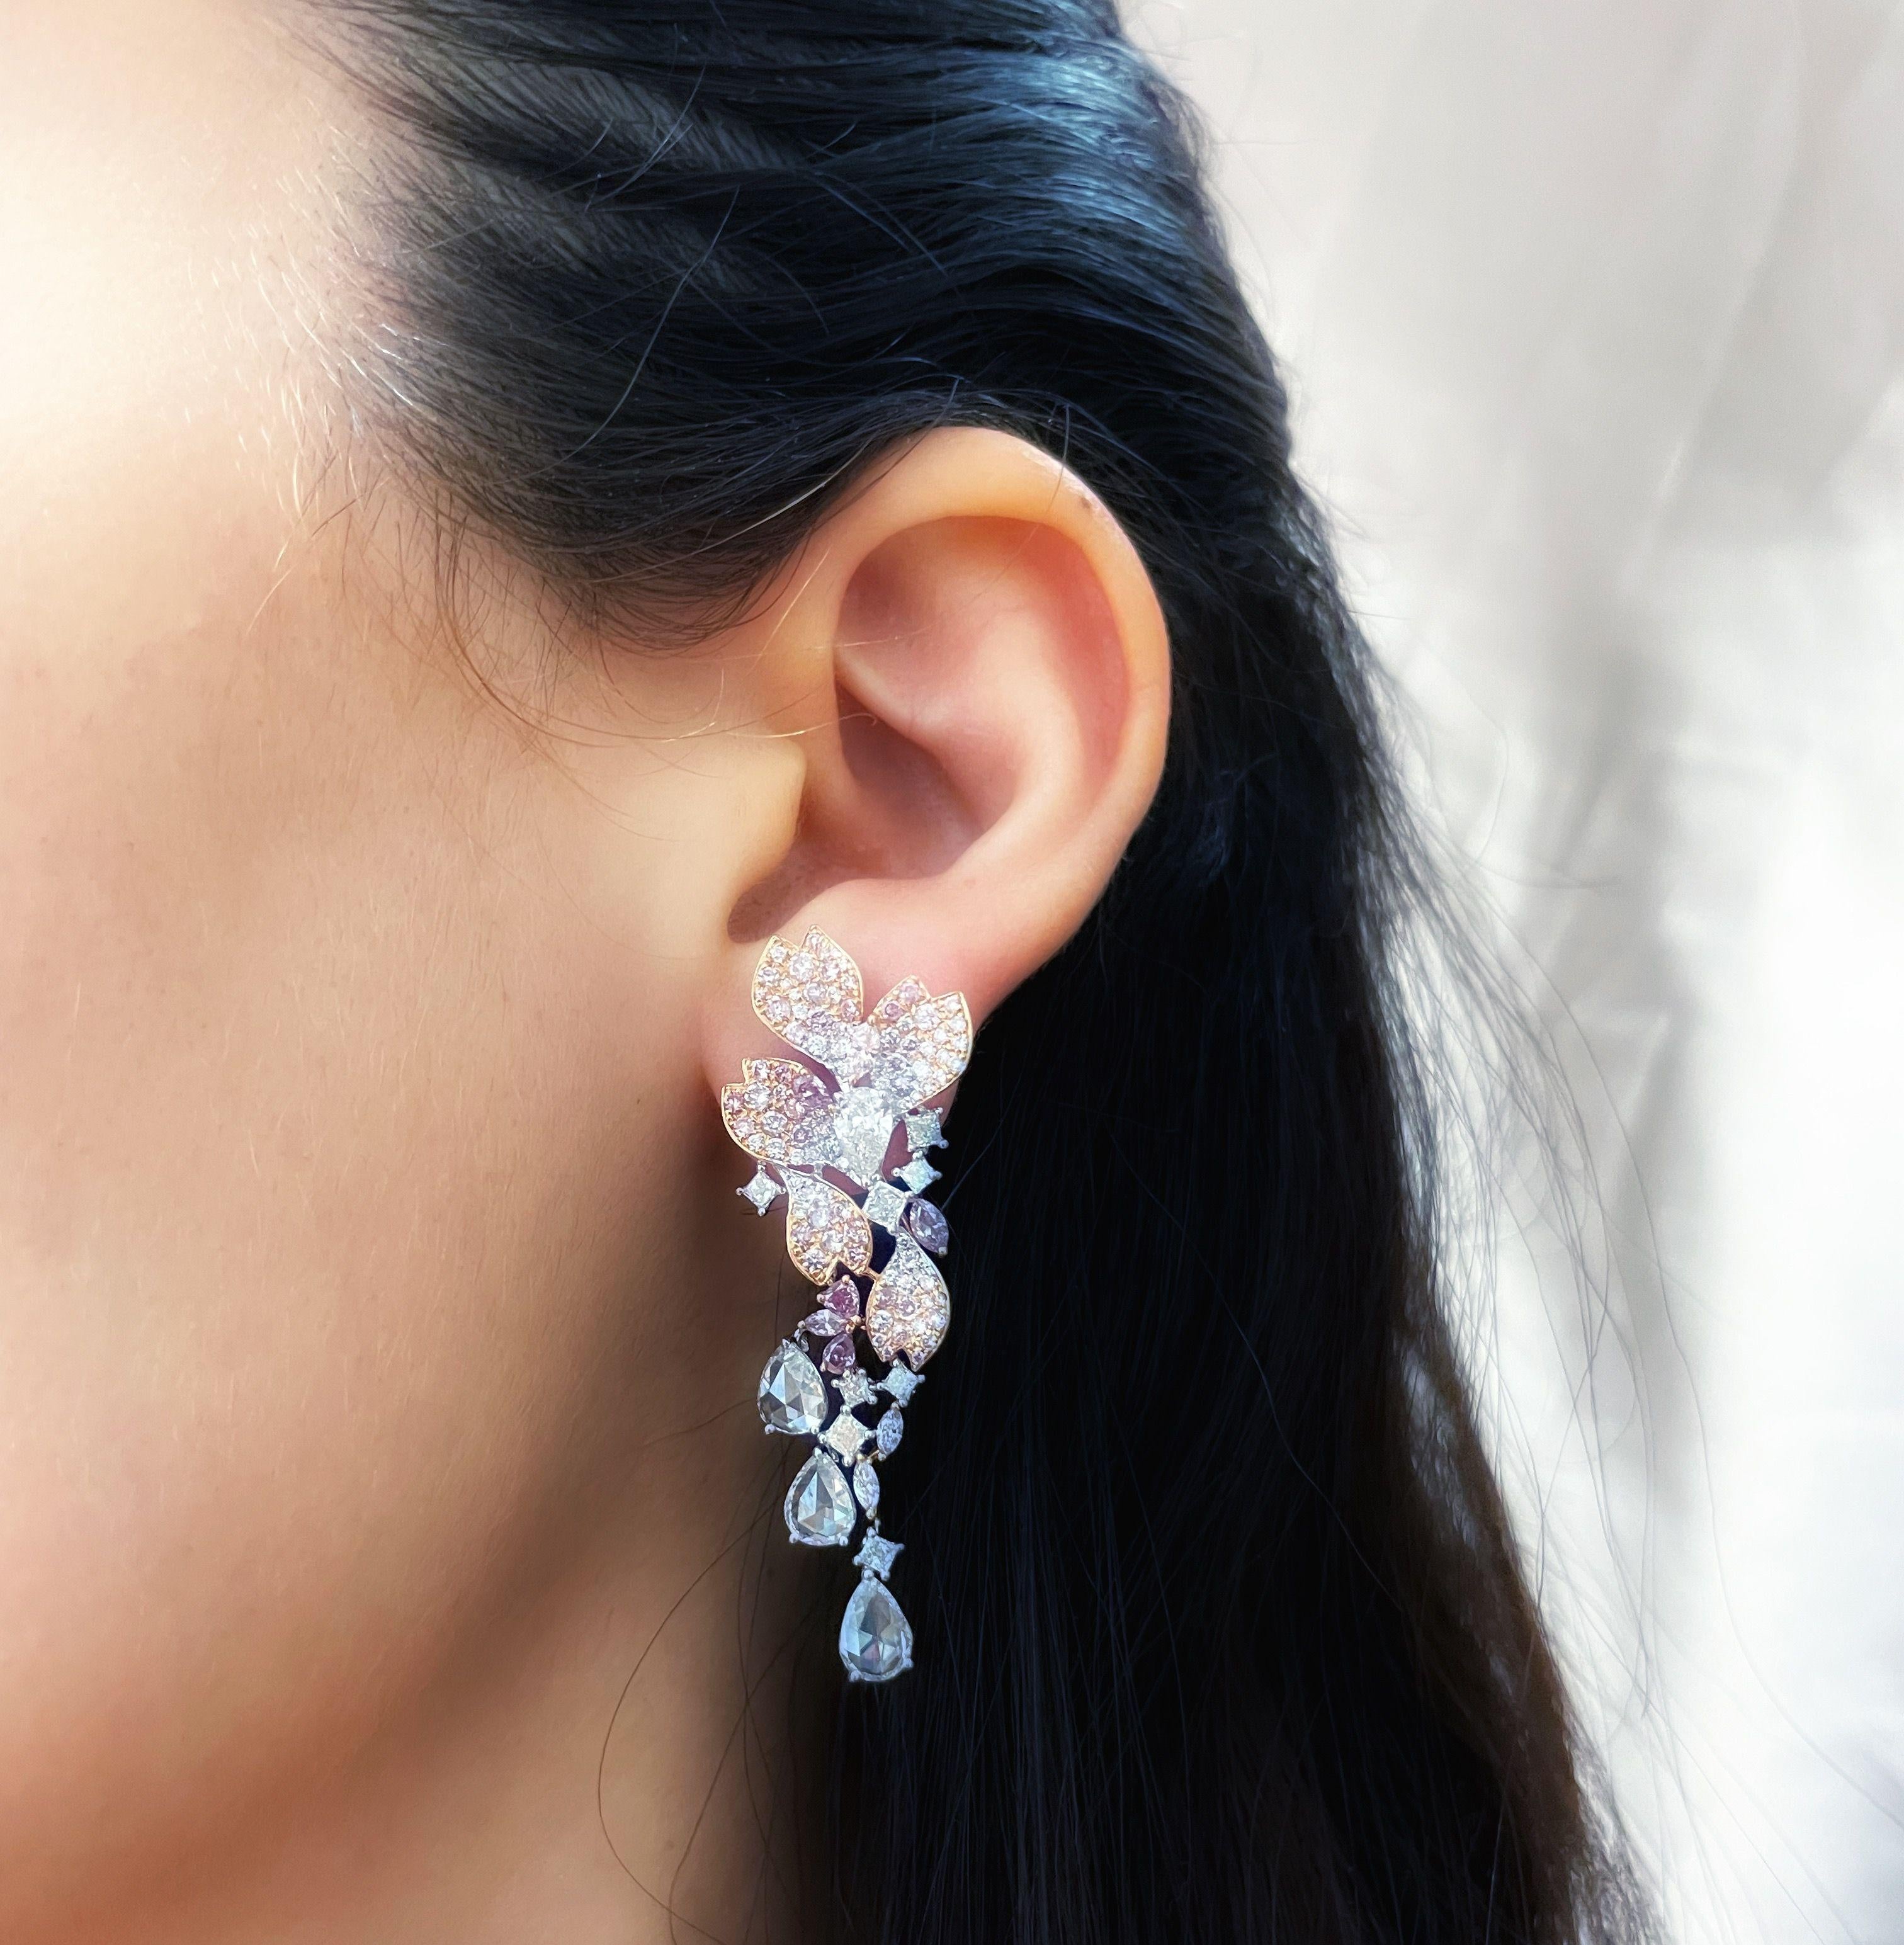 Eine atemberaubende viktorianischen abgestimmt Paar 6,93 Karat mix-förmigen rosa und weißen Diamanten 18k Rose und Weißgold Kronleuchter Tropfen Ohrringe.
Diese eleganten und einzigartigen Kronleuchter-Tropfenohrringe präsentieren eine schöne